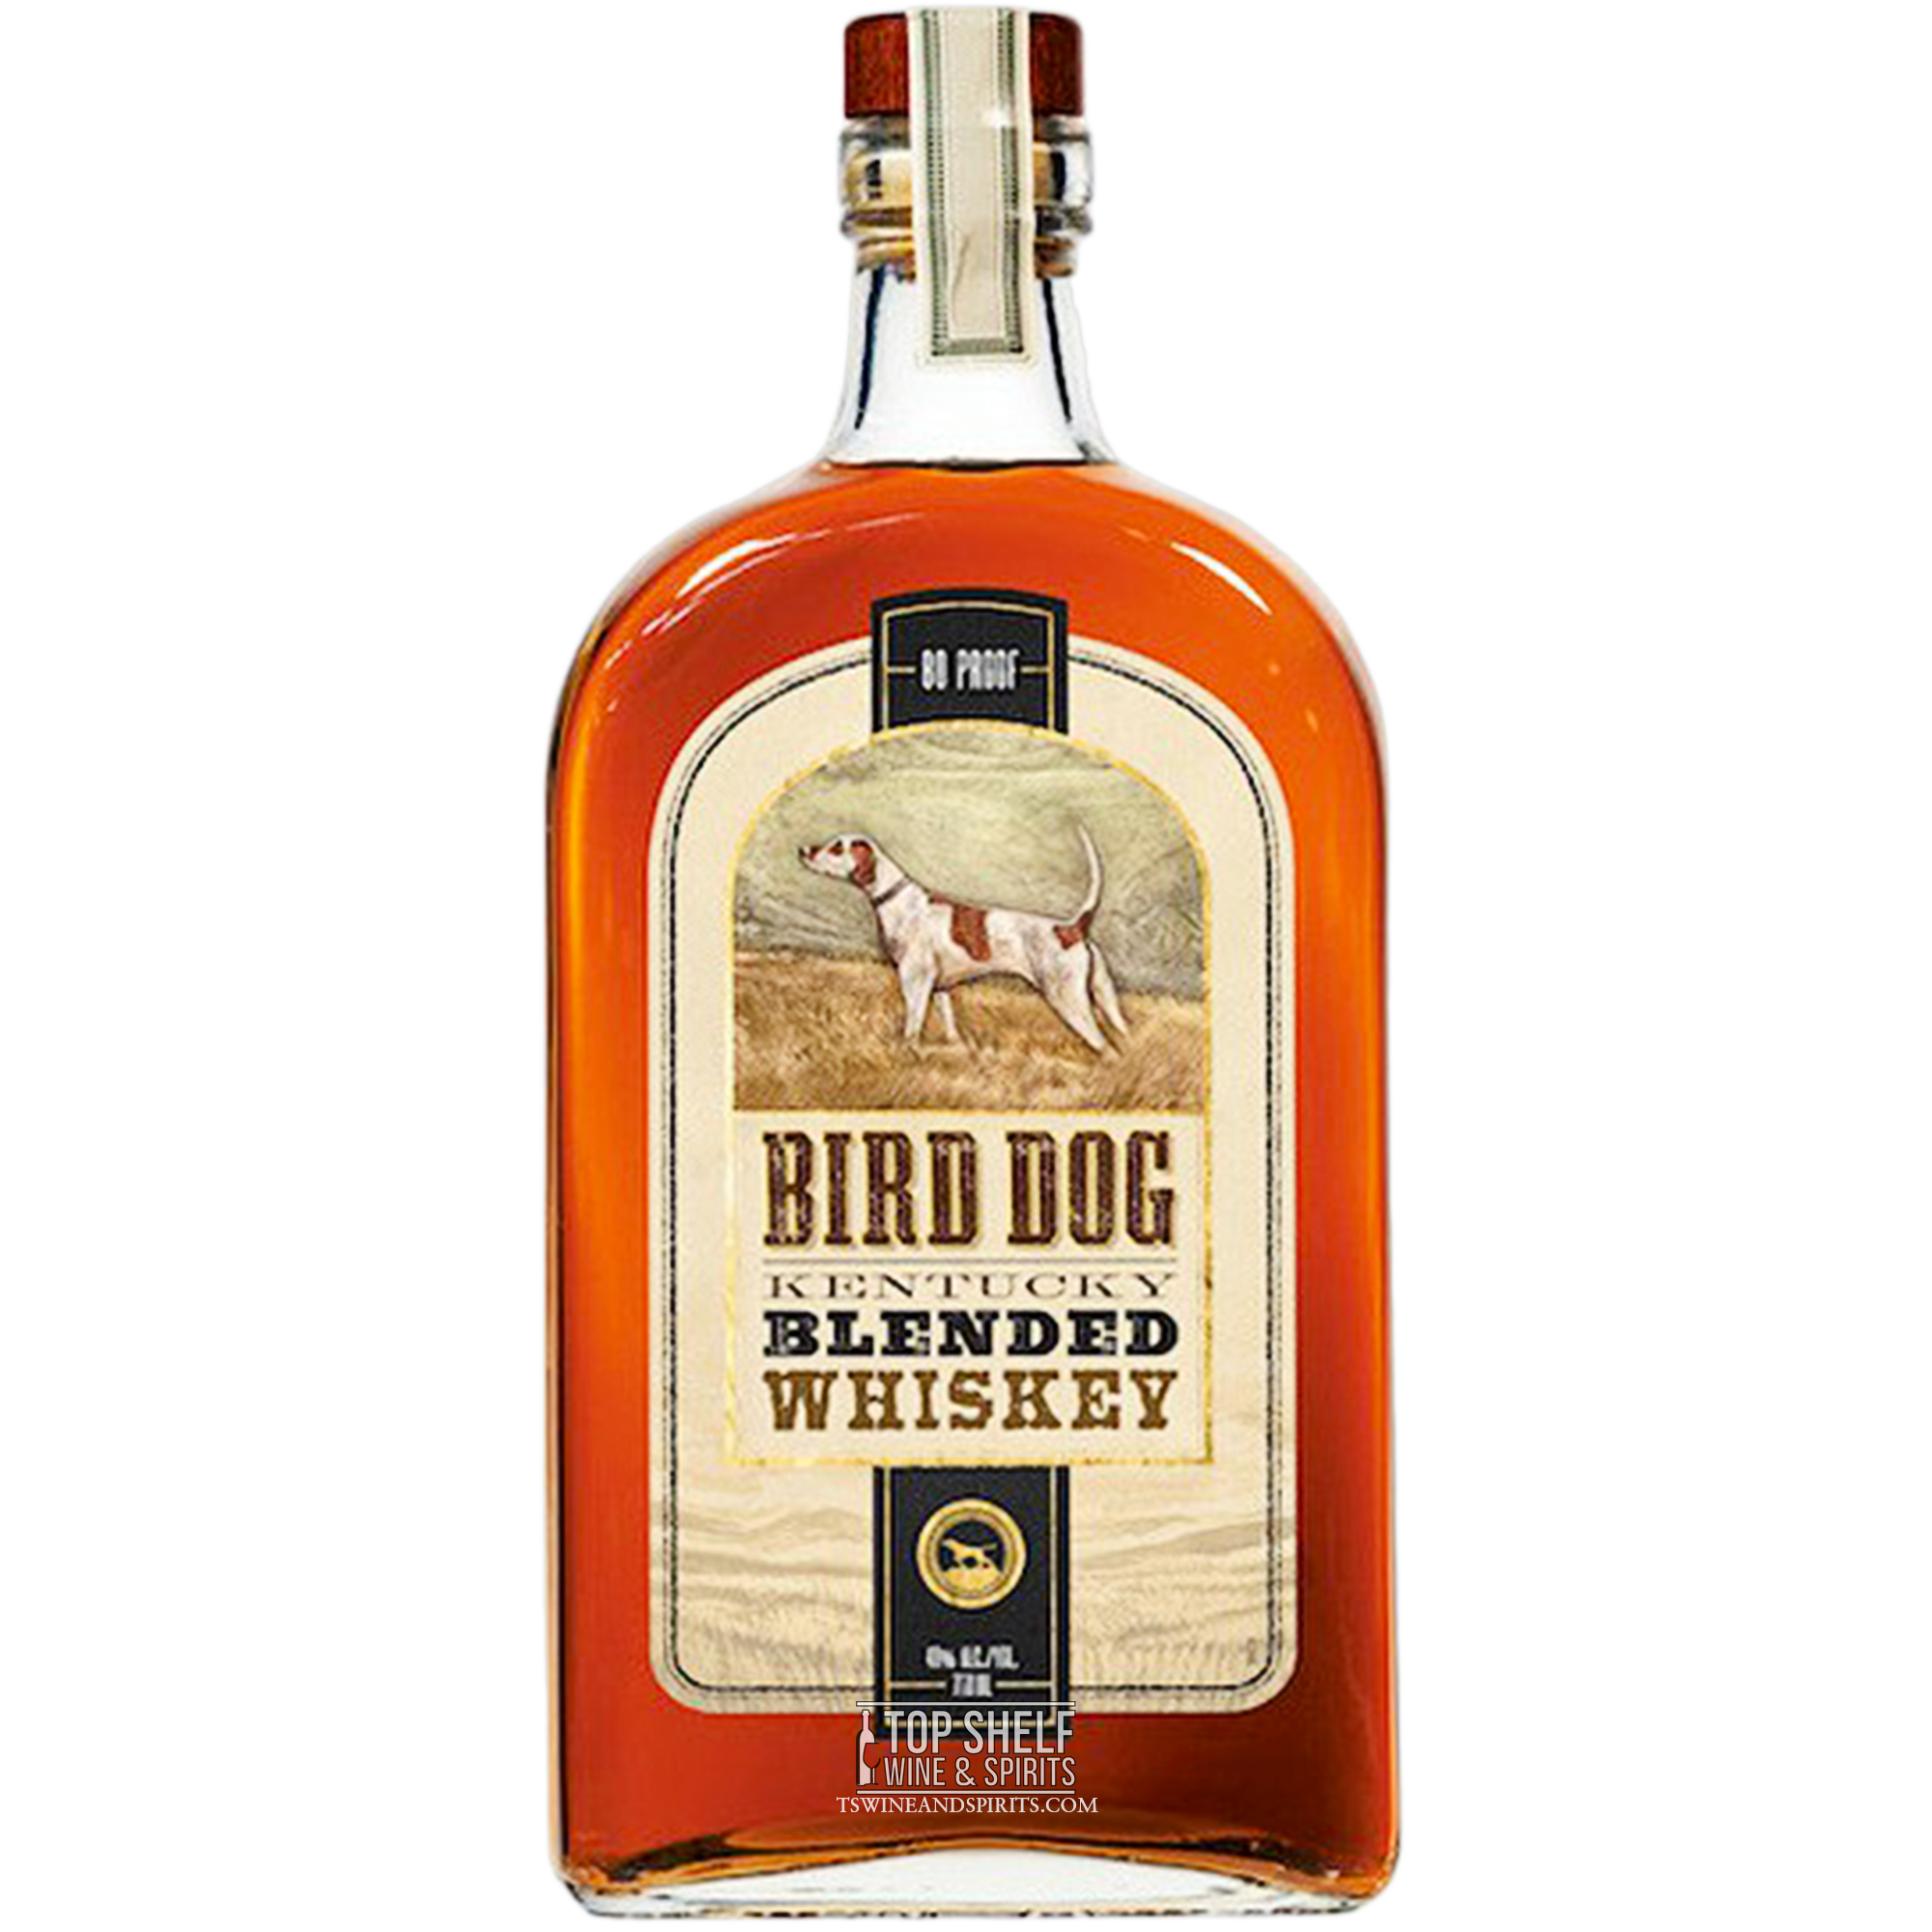 Bird Dog Kentucky Blended Bourbon